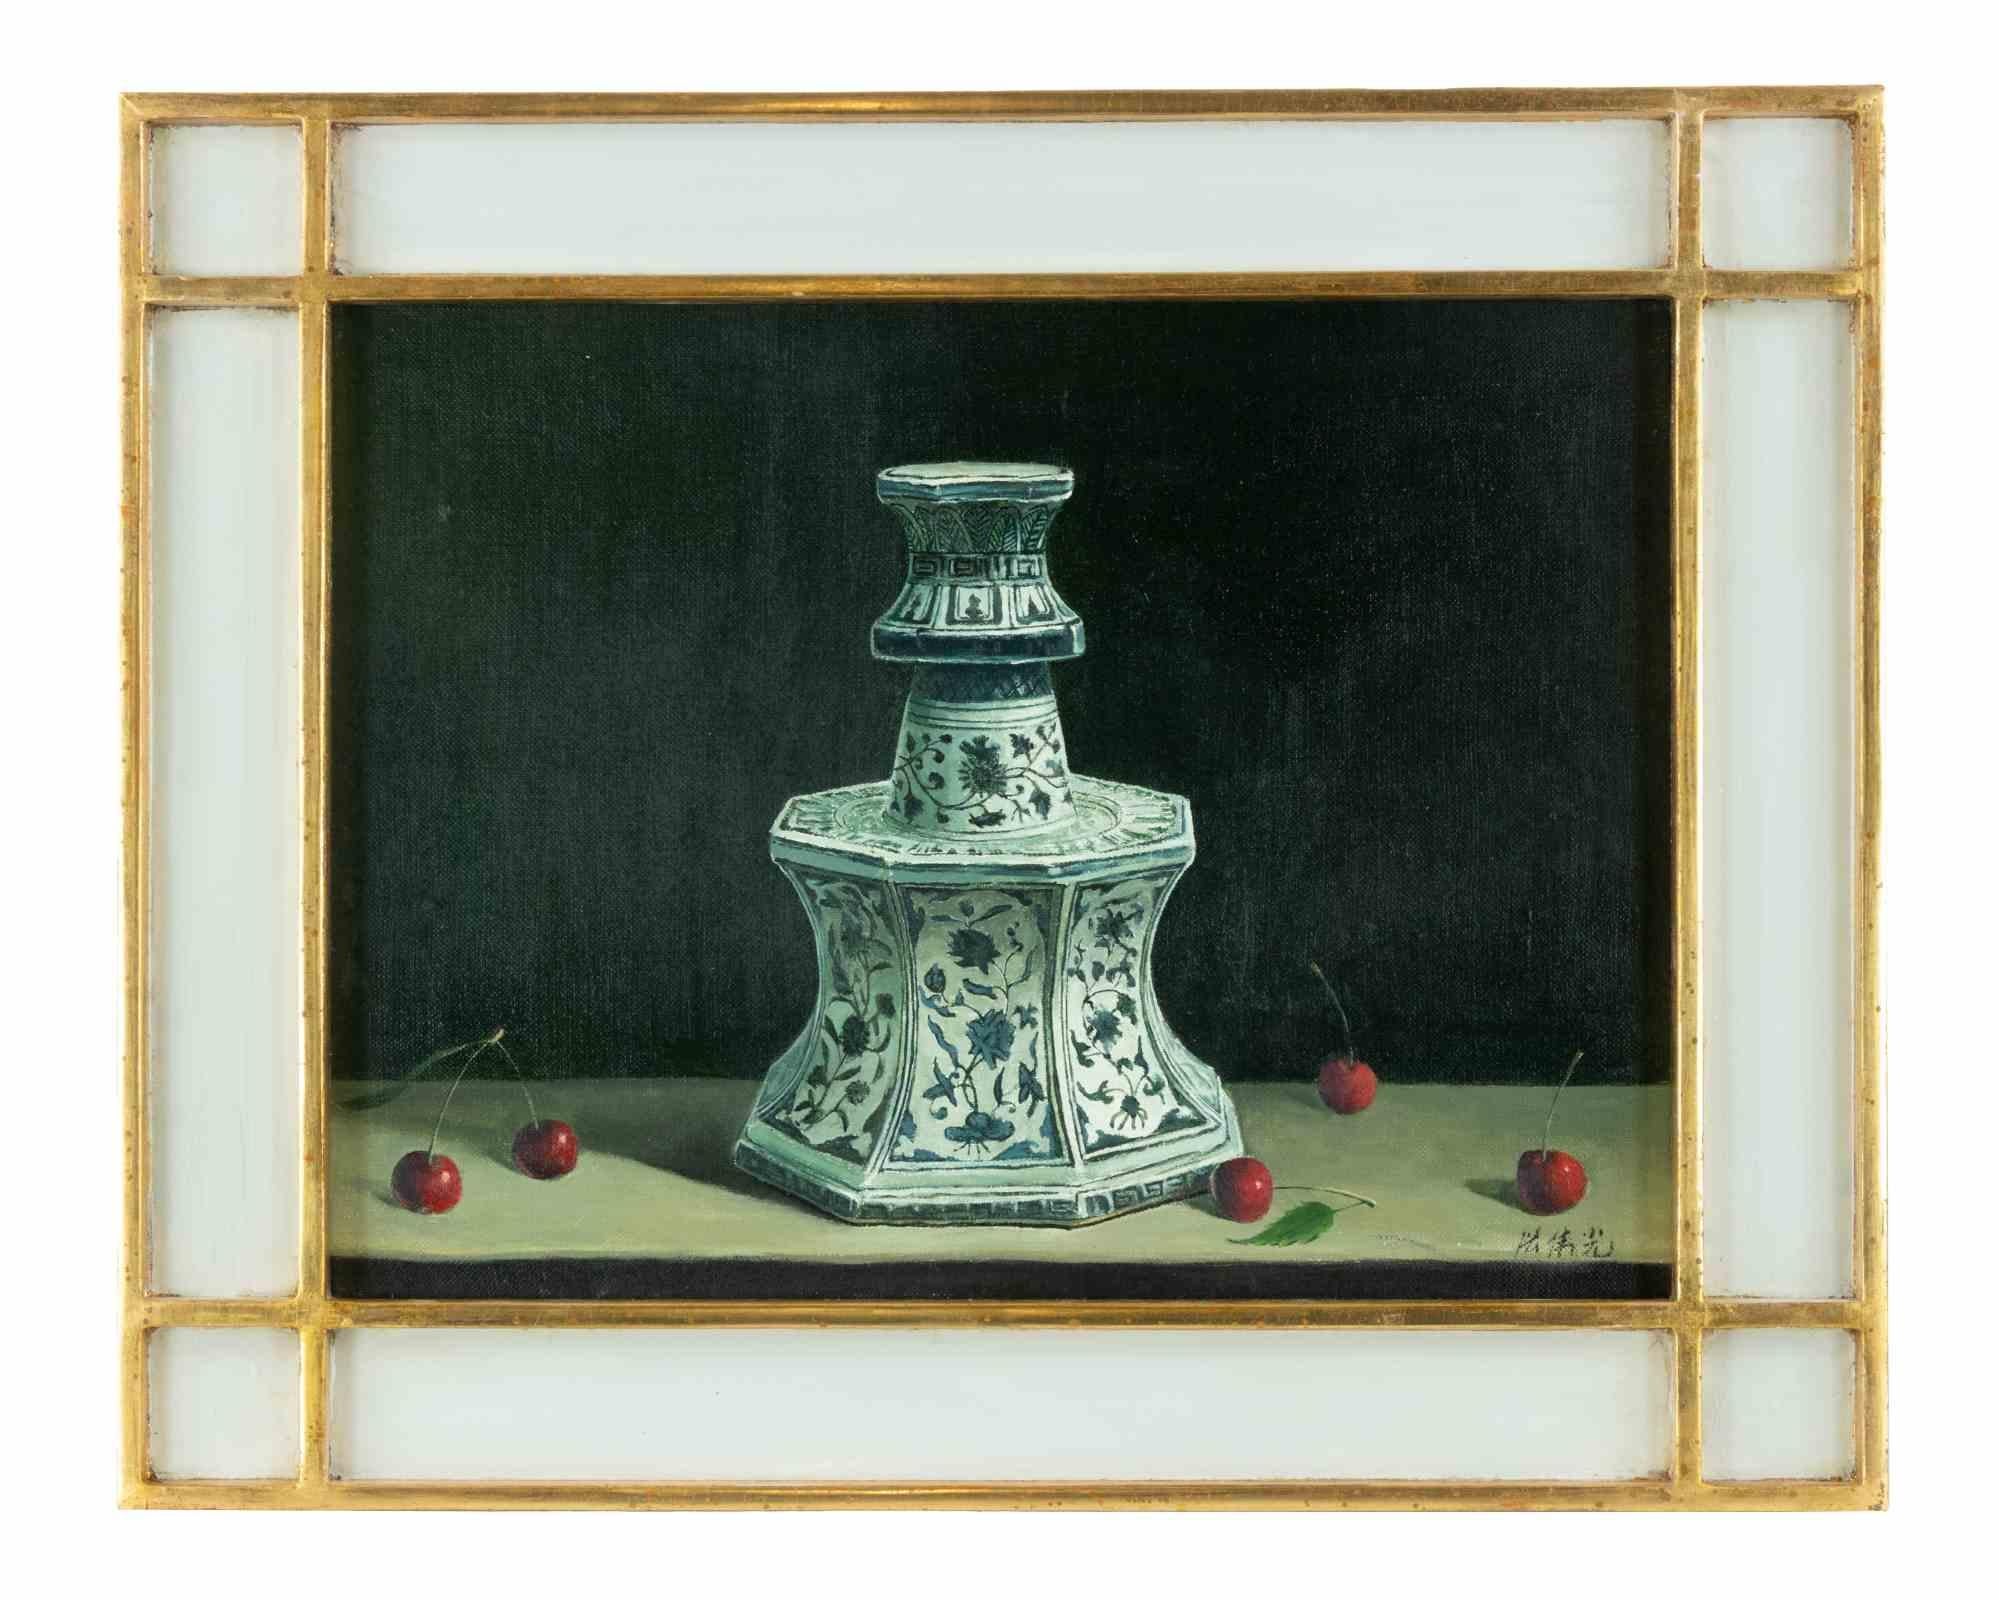 Points rouges est une peinture à l'huile réalisée dans les années 2010 par Zhang Wei Guang (Miroir).

Peinture à l'huile sur toile. 

Comprend un cadre : 40 x 3 x 50 cm.

Signé à la main dans la marge inférieure

Zhang Wei Guang, également appelé